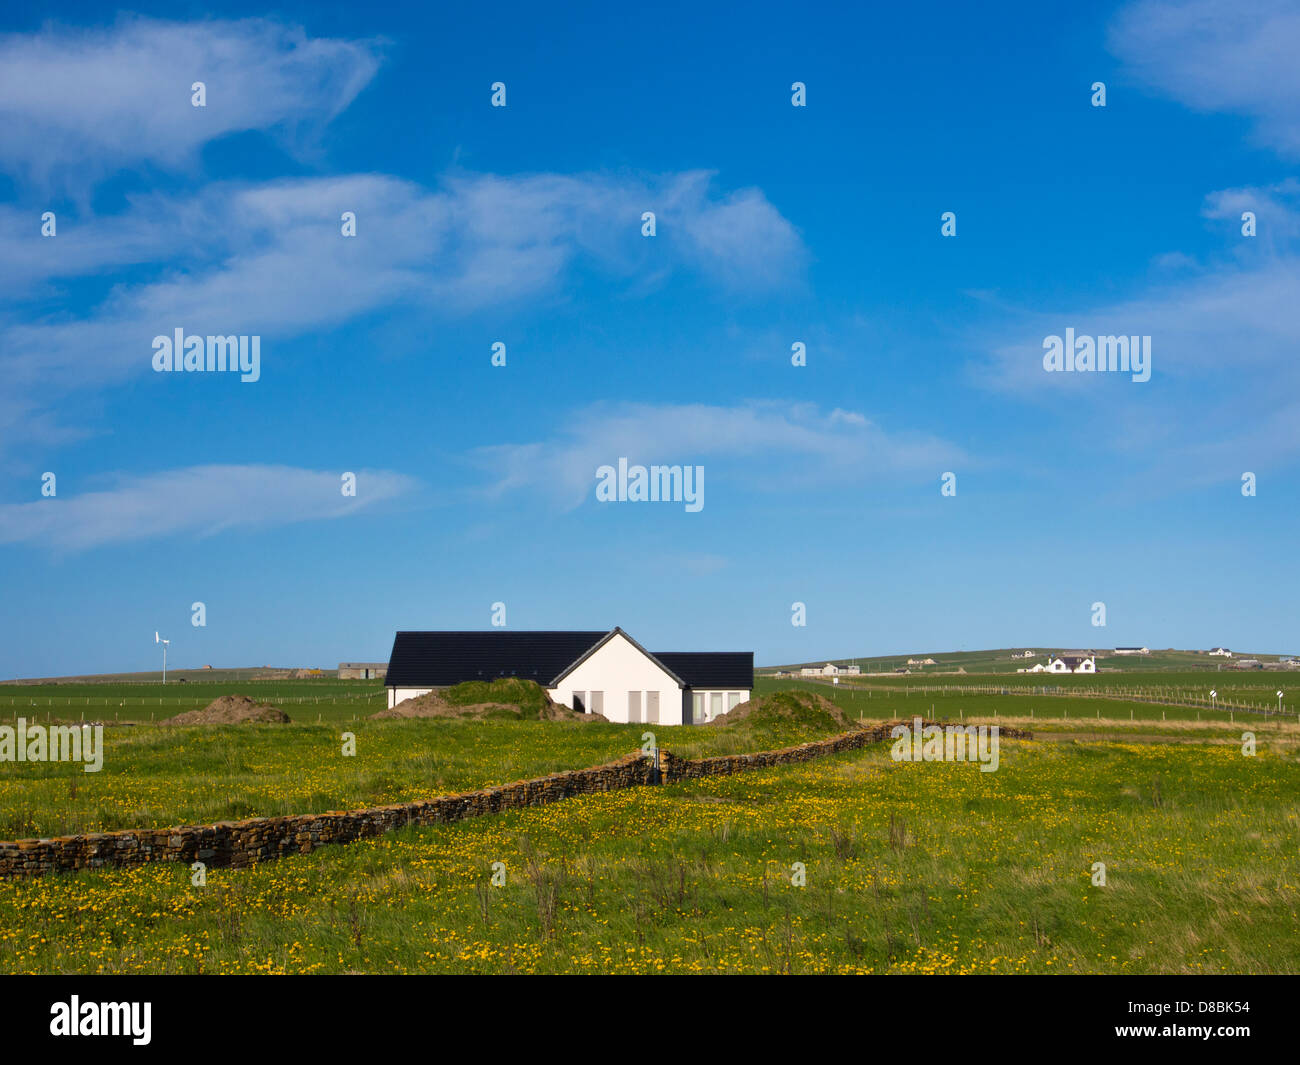 Ecosse, îles Orcades, Orkney continentale. Maison à Birsay paroisse, une petite colonie sur la côte ouest de la partie continentale de l'Orkney. Banque D'Images